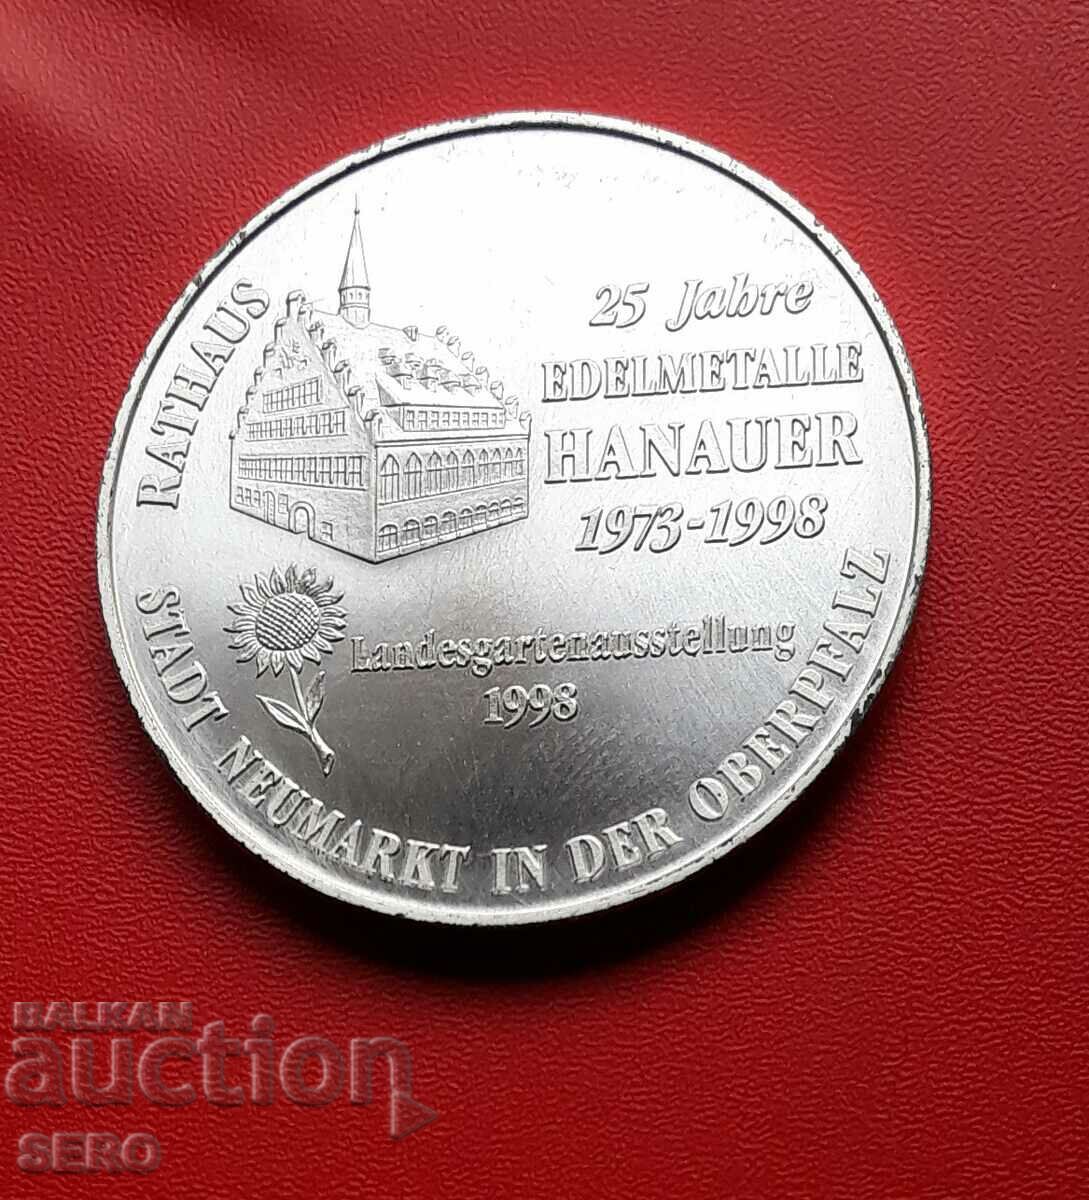 Германия-плакет-25 г. търг. с благородни метали в Ноймаркт